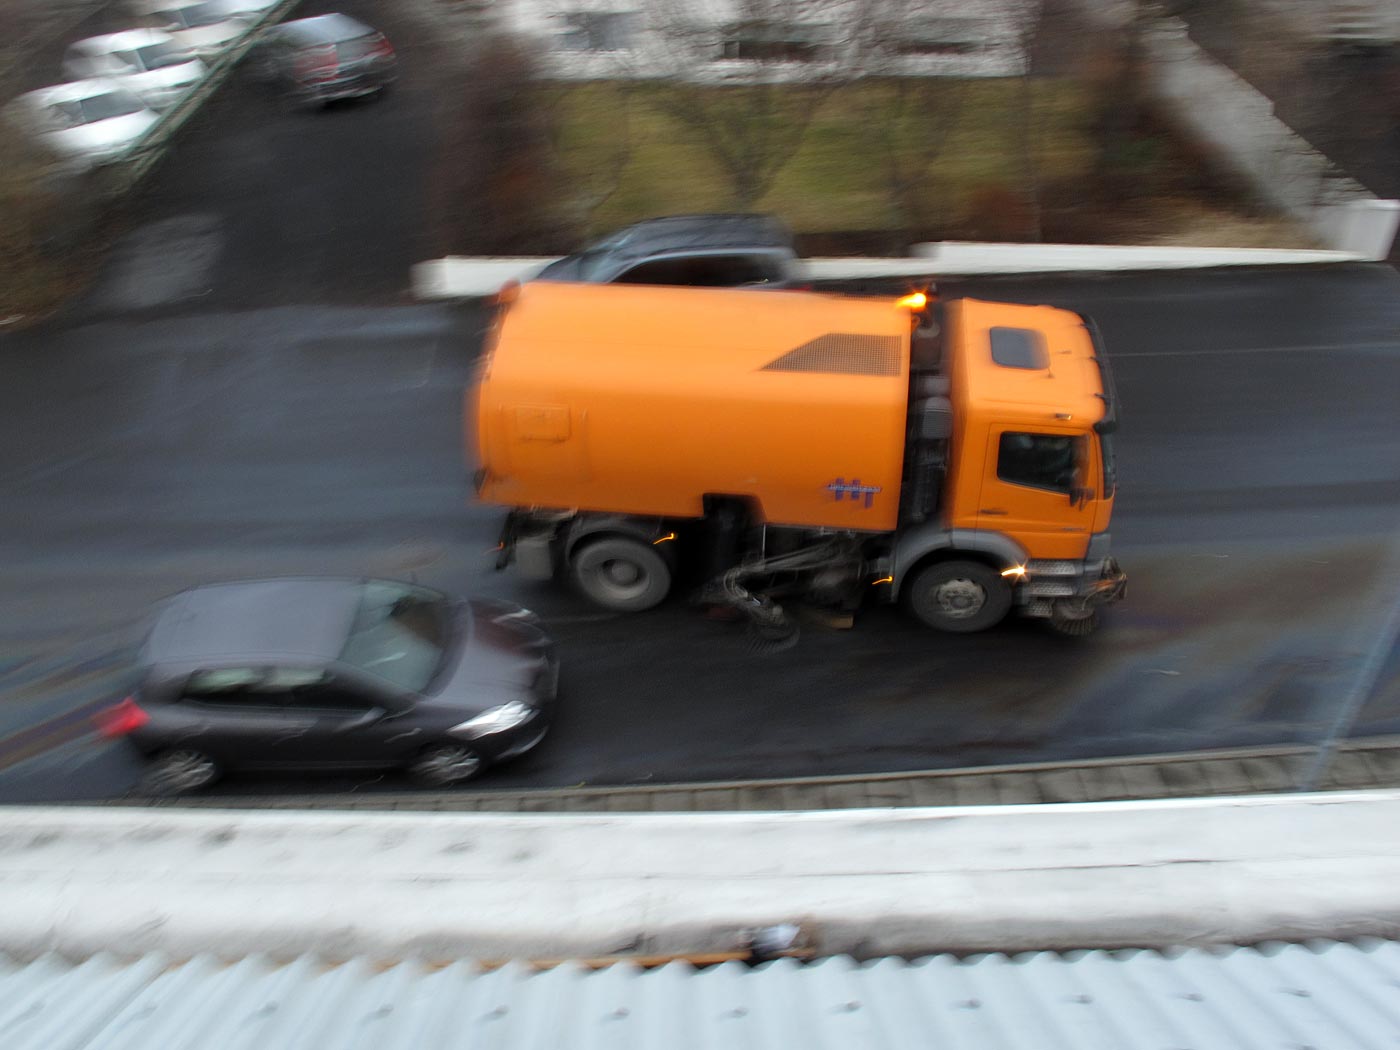 Reykjavík. Wie in Reykjavík Öl auf der Strasse entfernt wird. - Und wie das Umweltschutzamt (?) der Stadt Reykjavík das Öl beseitigt. (19.02.2013)